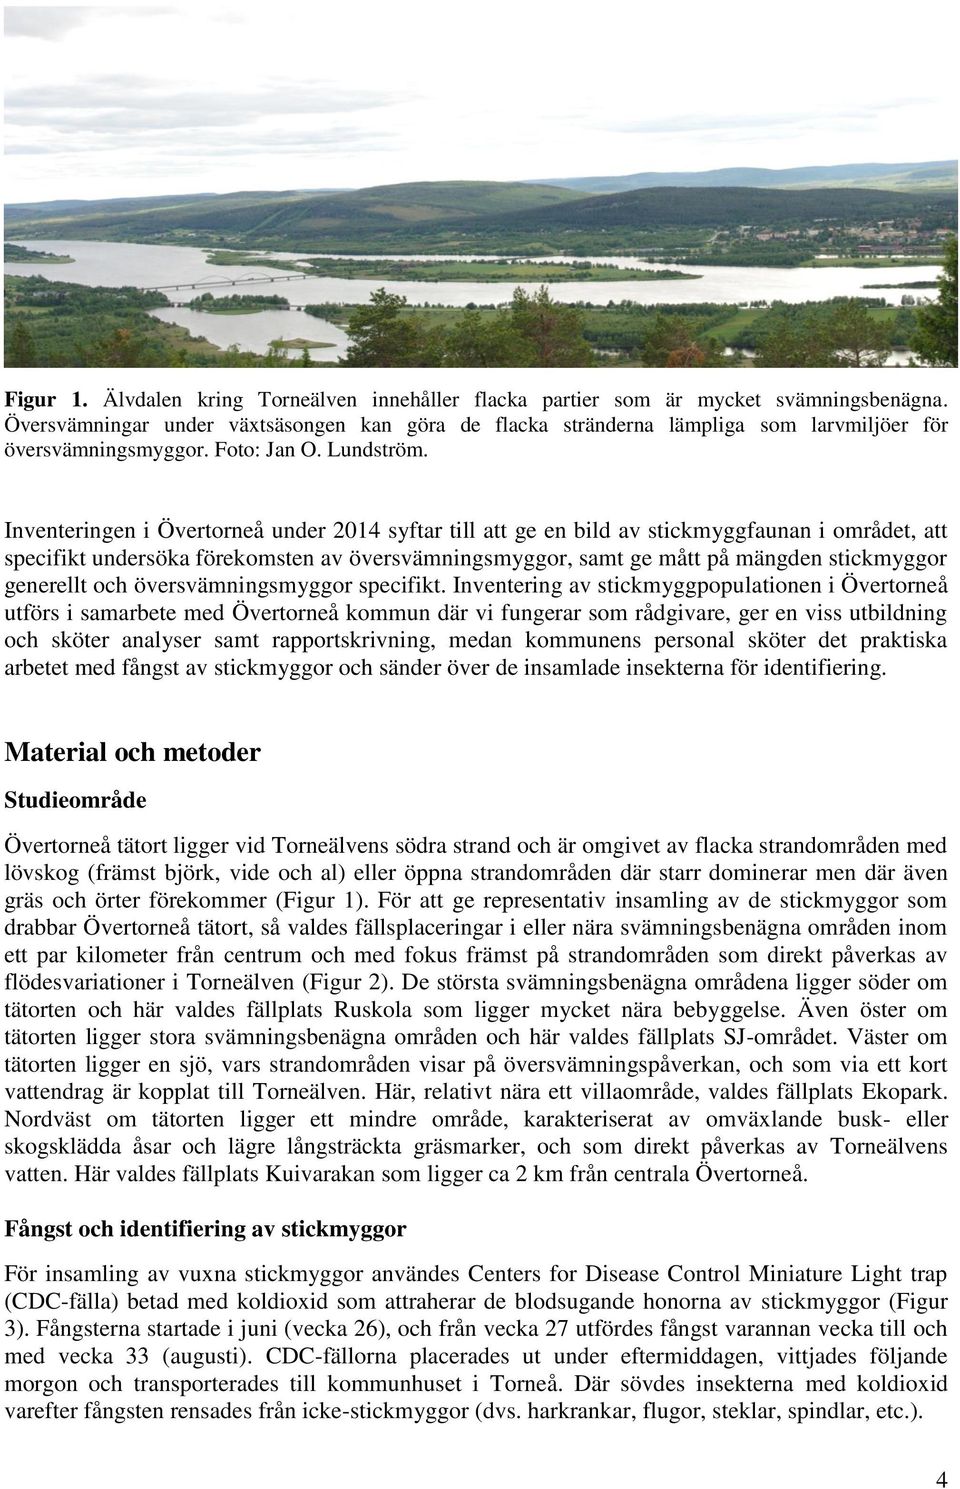 Inventeringen i Övertorneå under 2014 syftar till att ge en bild av stickmyggfaunan i området, att specifikt undersöka förekomsten av översvämningsmyggor, samt ge mått på mängden stickmyggor